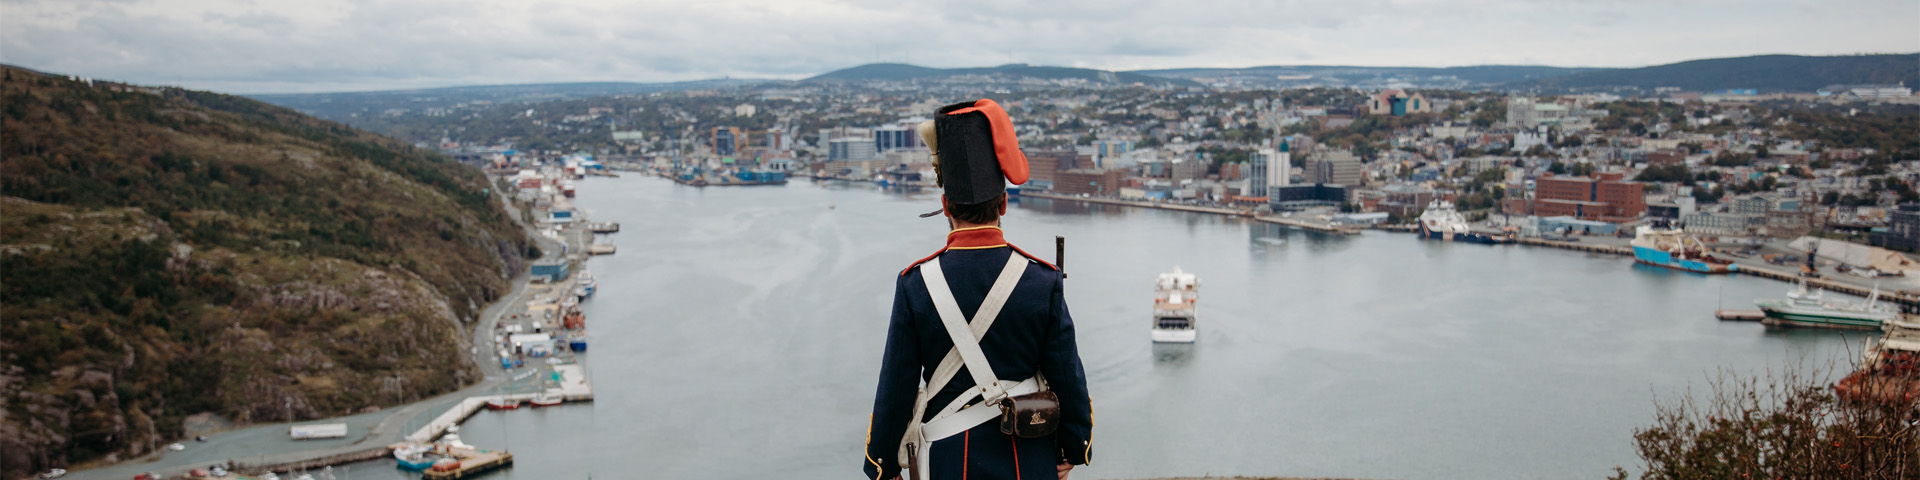 un homme en uniforme militaire historique, surplombant le port d'une ville.